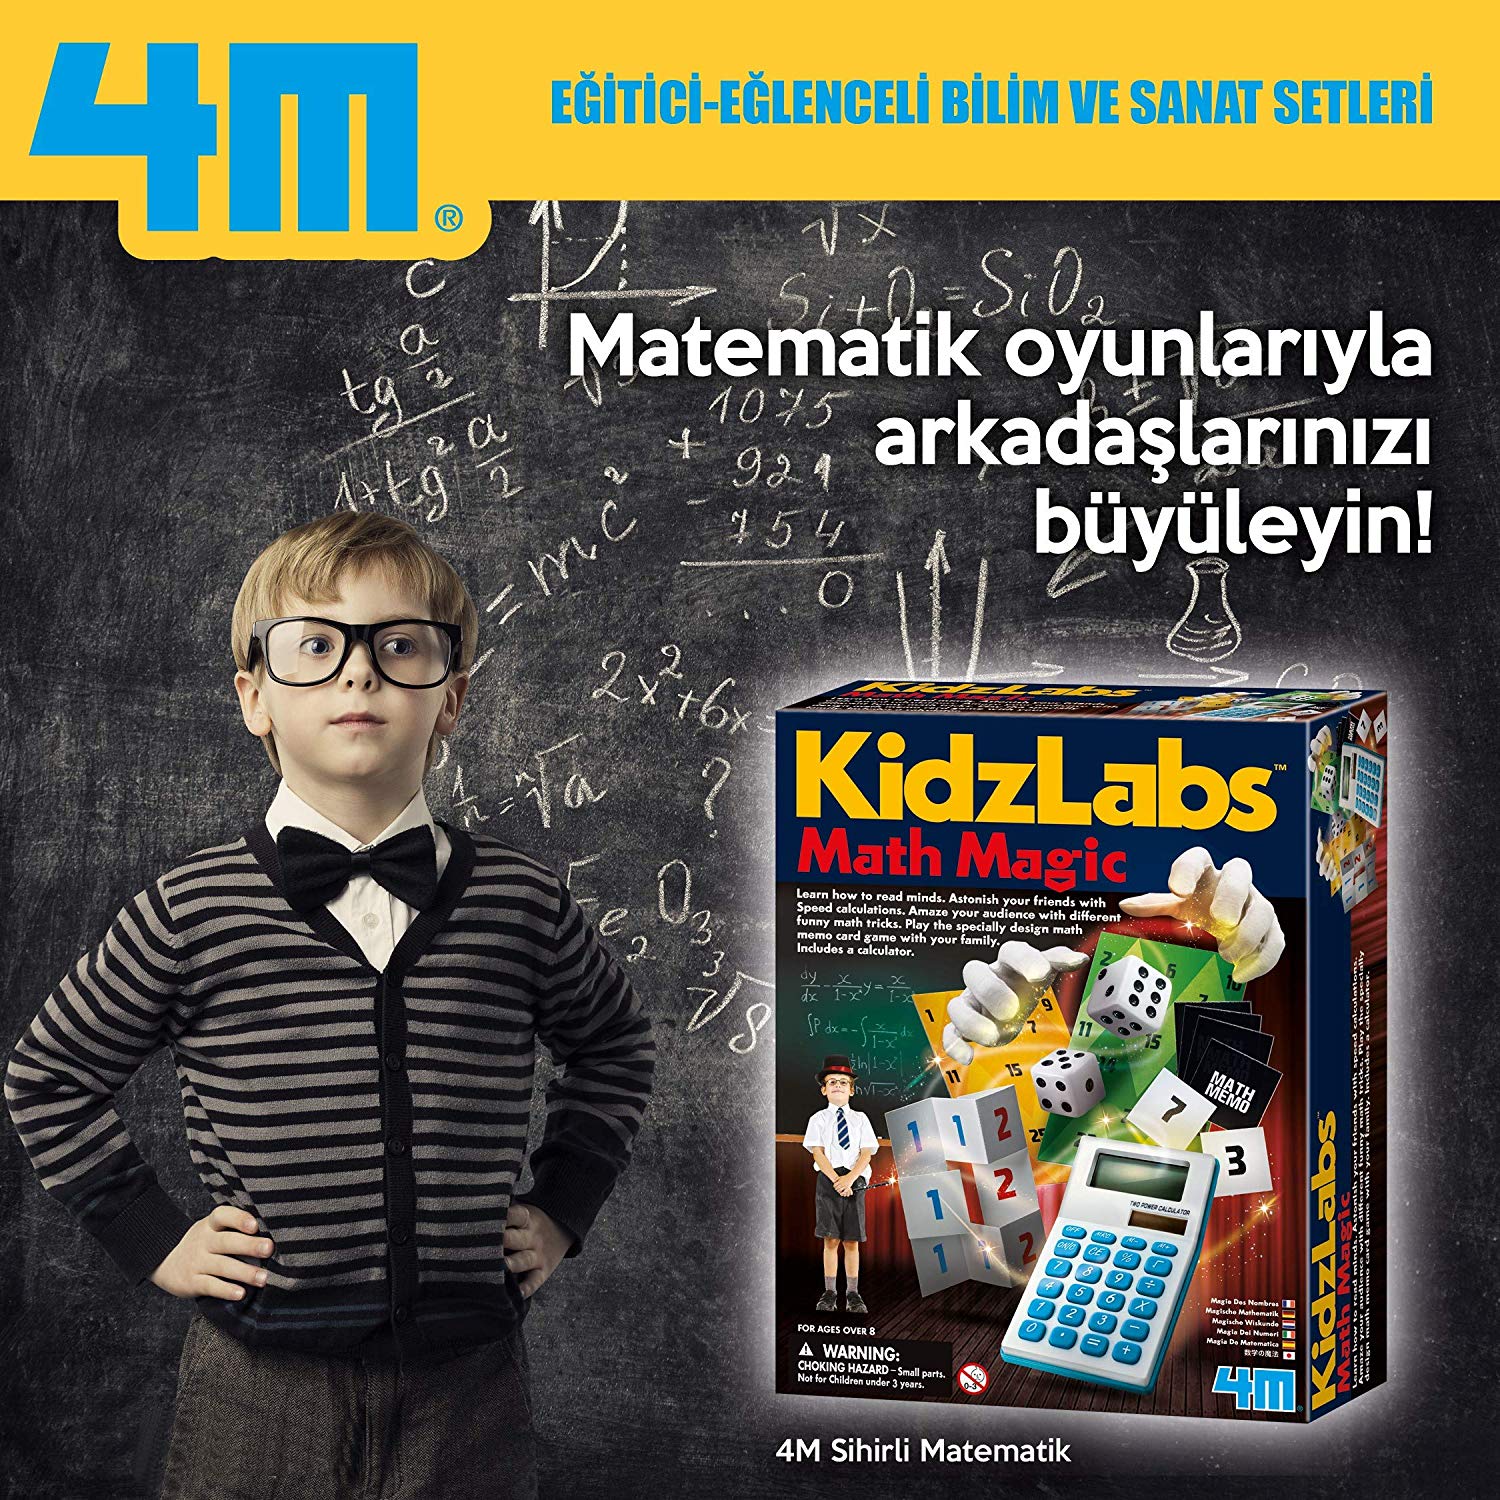 4M Kidz Labs Math Magic Fun Maths Tricks Games & Puzzles 